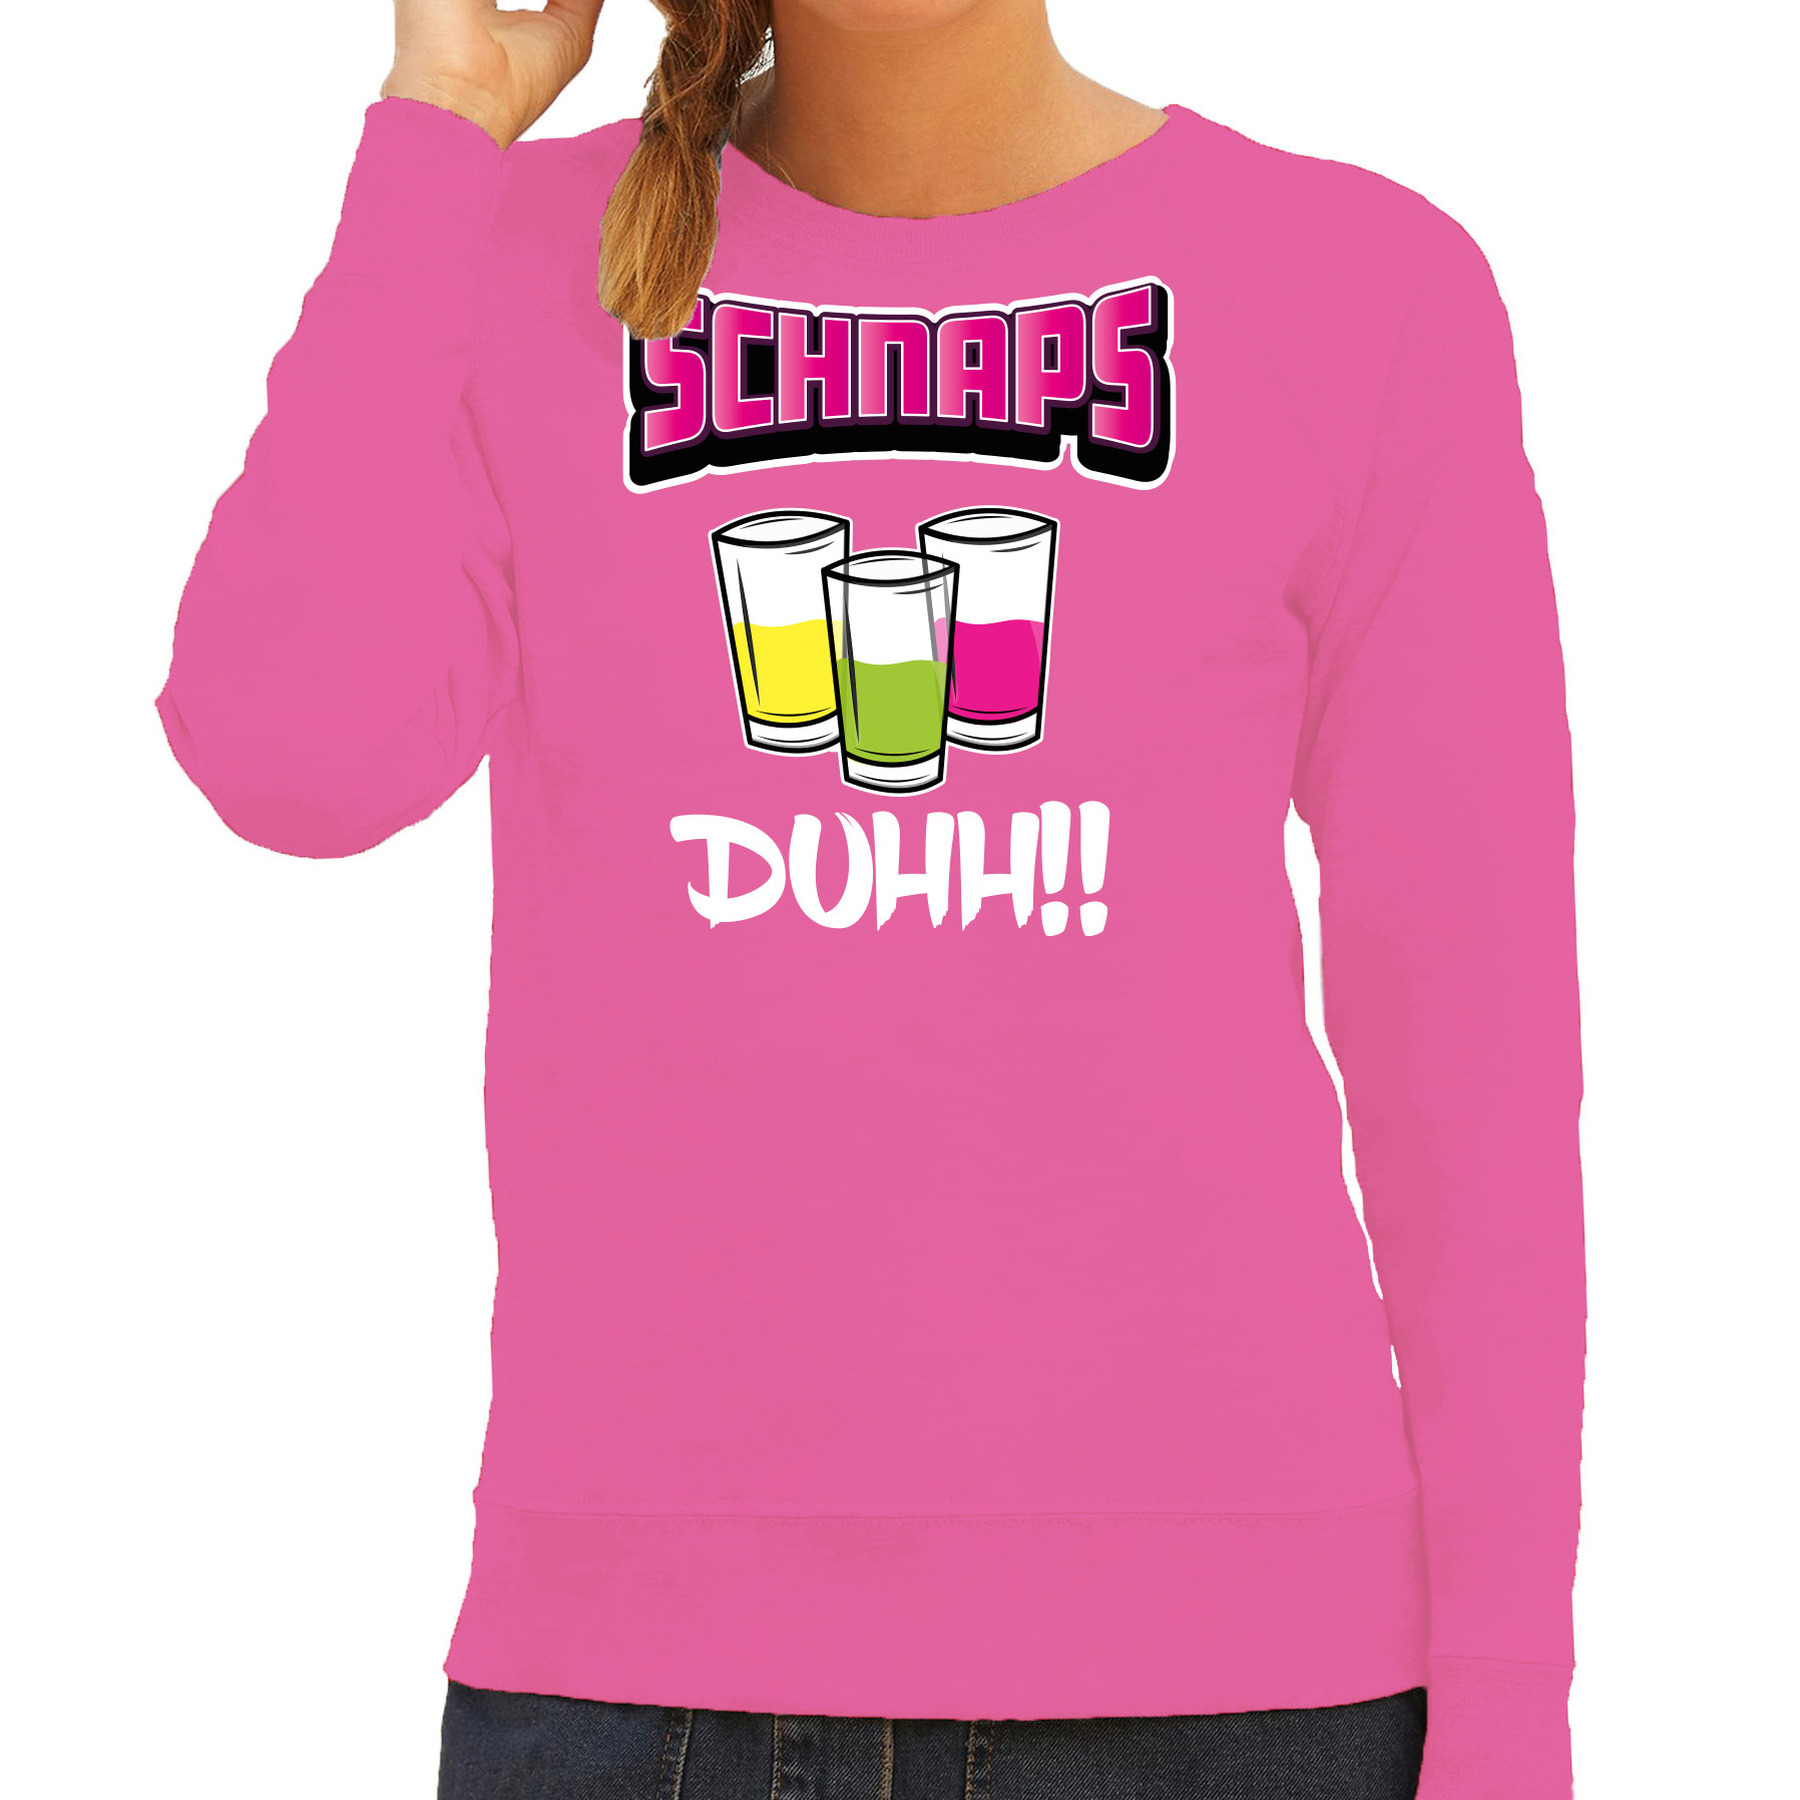 Apres ski sweater-trui voor dames schnapps duhh roze wintersport shotjes